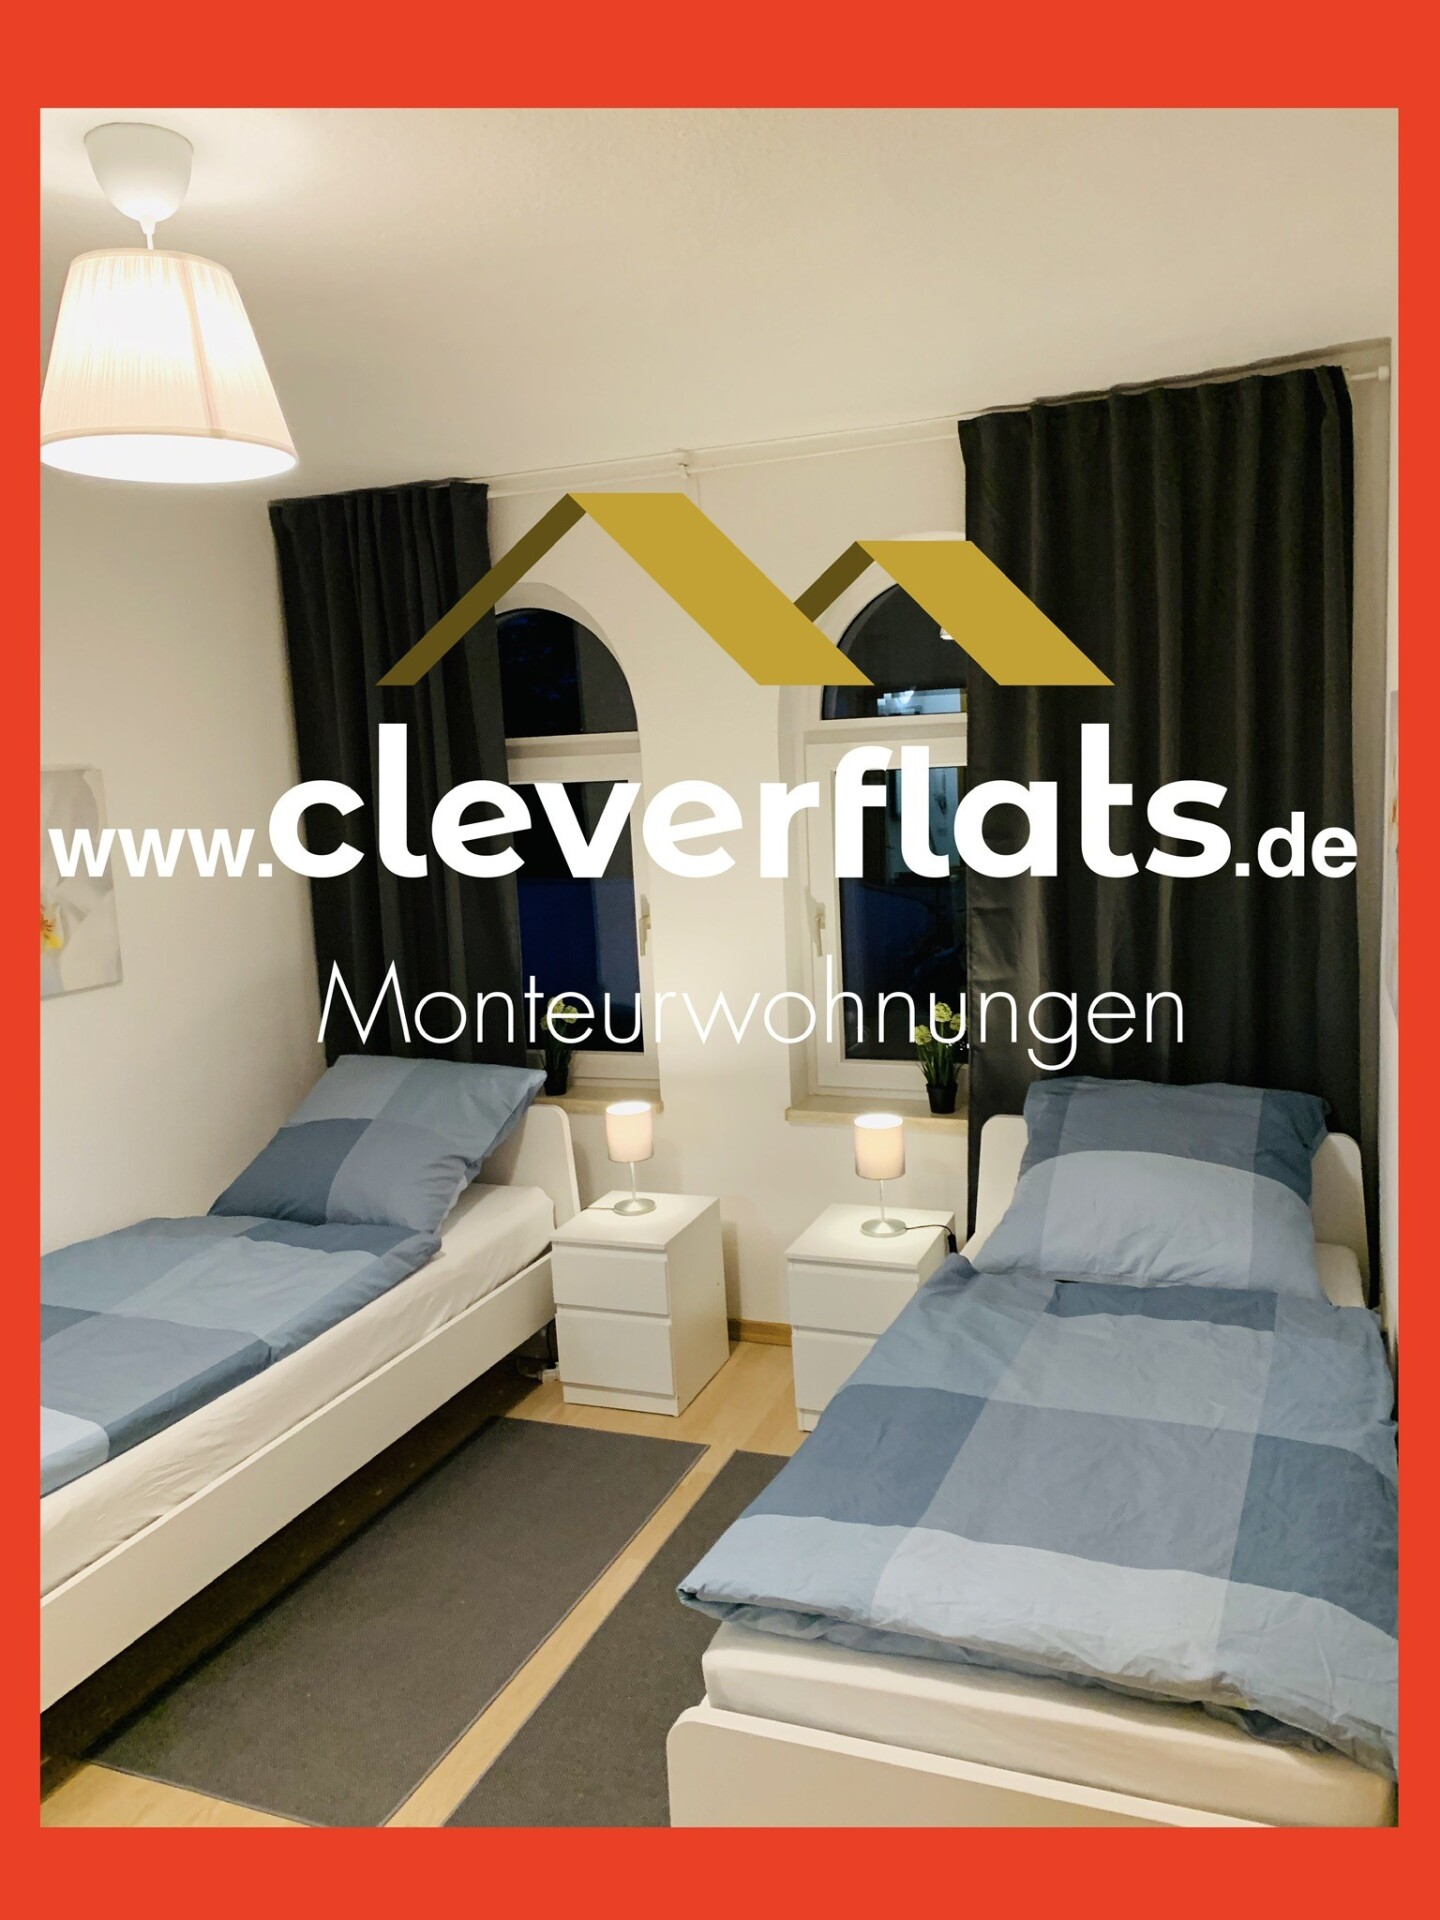 Cleverflats Nagelneue Monteurwohnungen in Gera  Kristina Schweigert 07545 167532771363db78e1ce51c